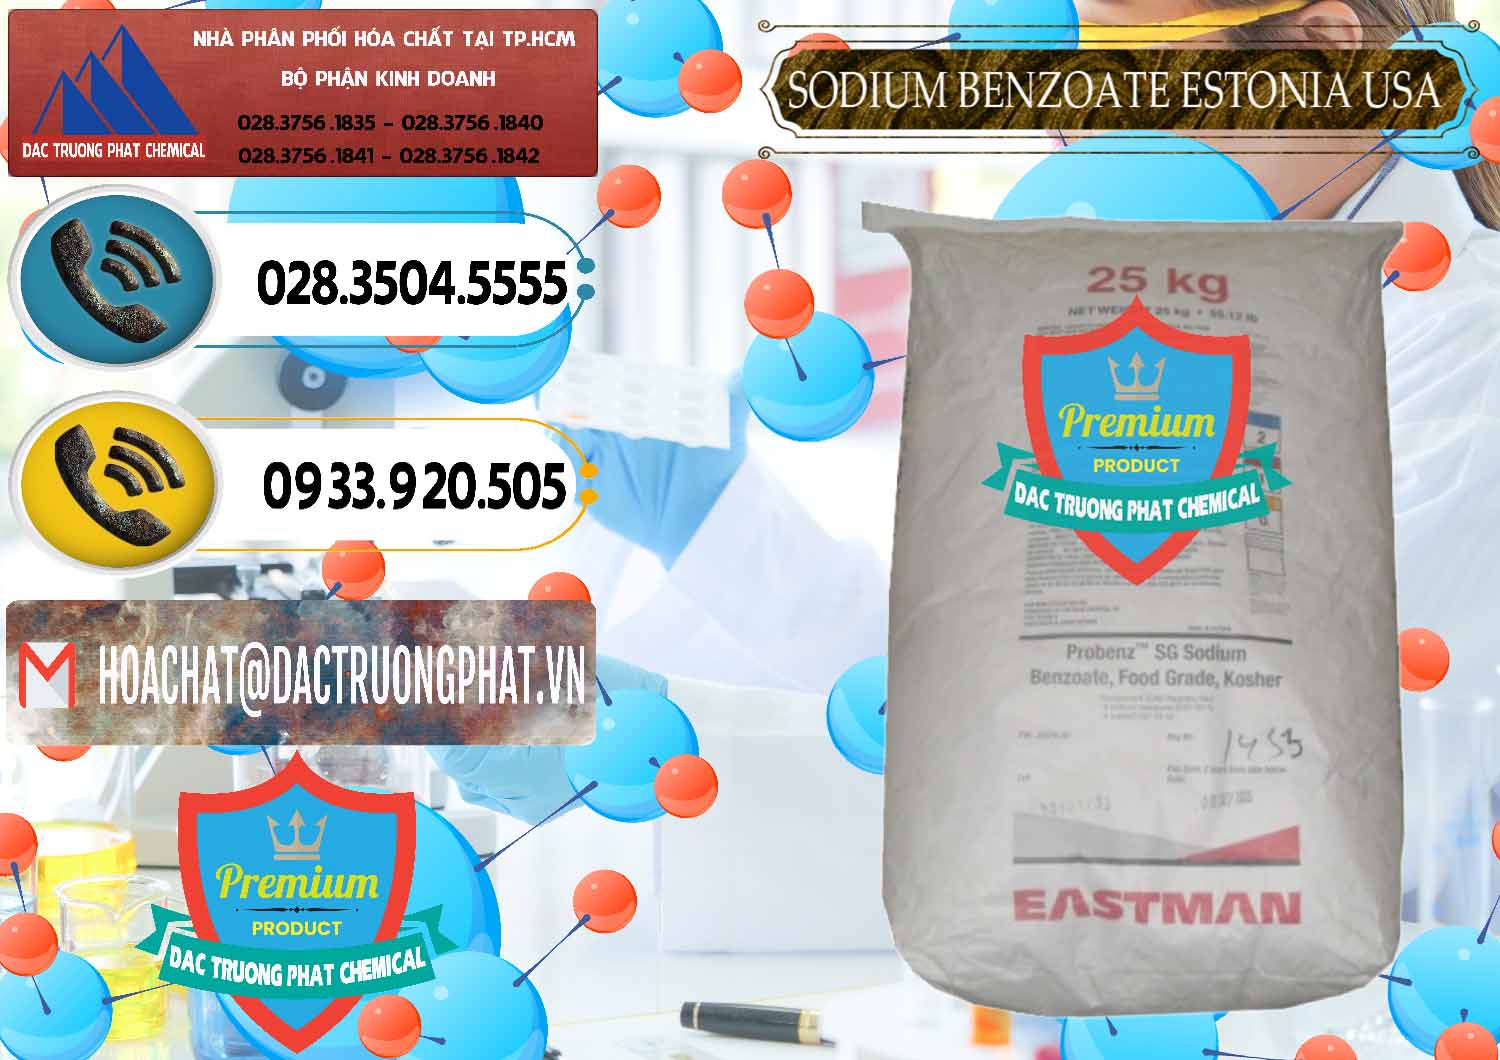 Chuyên bán - cung ứng Sodium Benzoate - Mốc Bột Estonia Mỹ USA - 0468 - Cung cấp và kinh doanh hóa chất tại TP.HCM - hoachatdetnhuom.vn